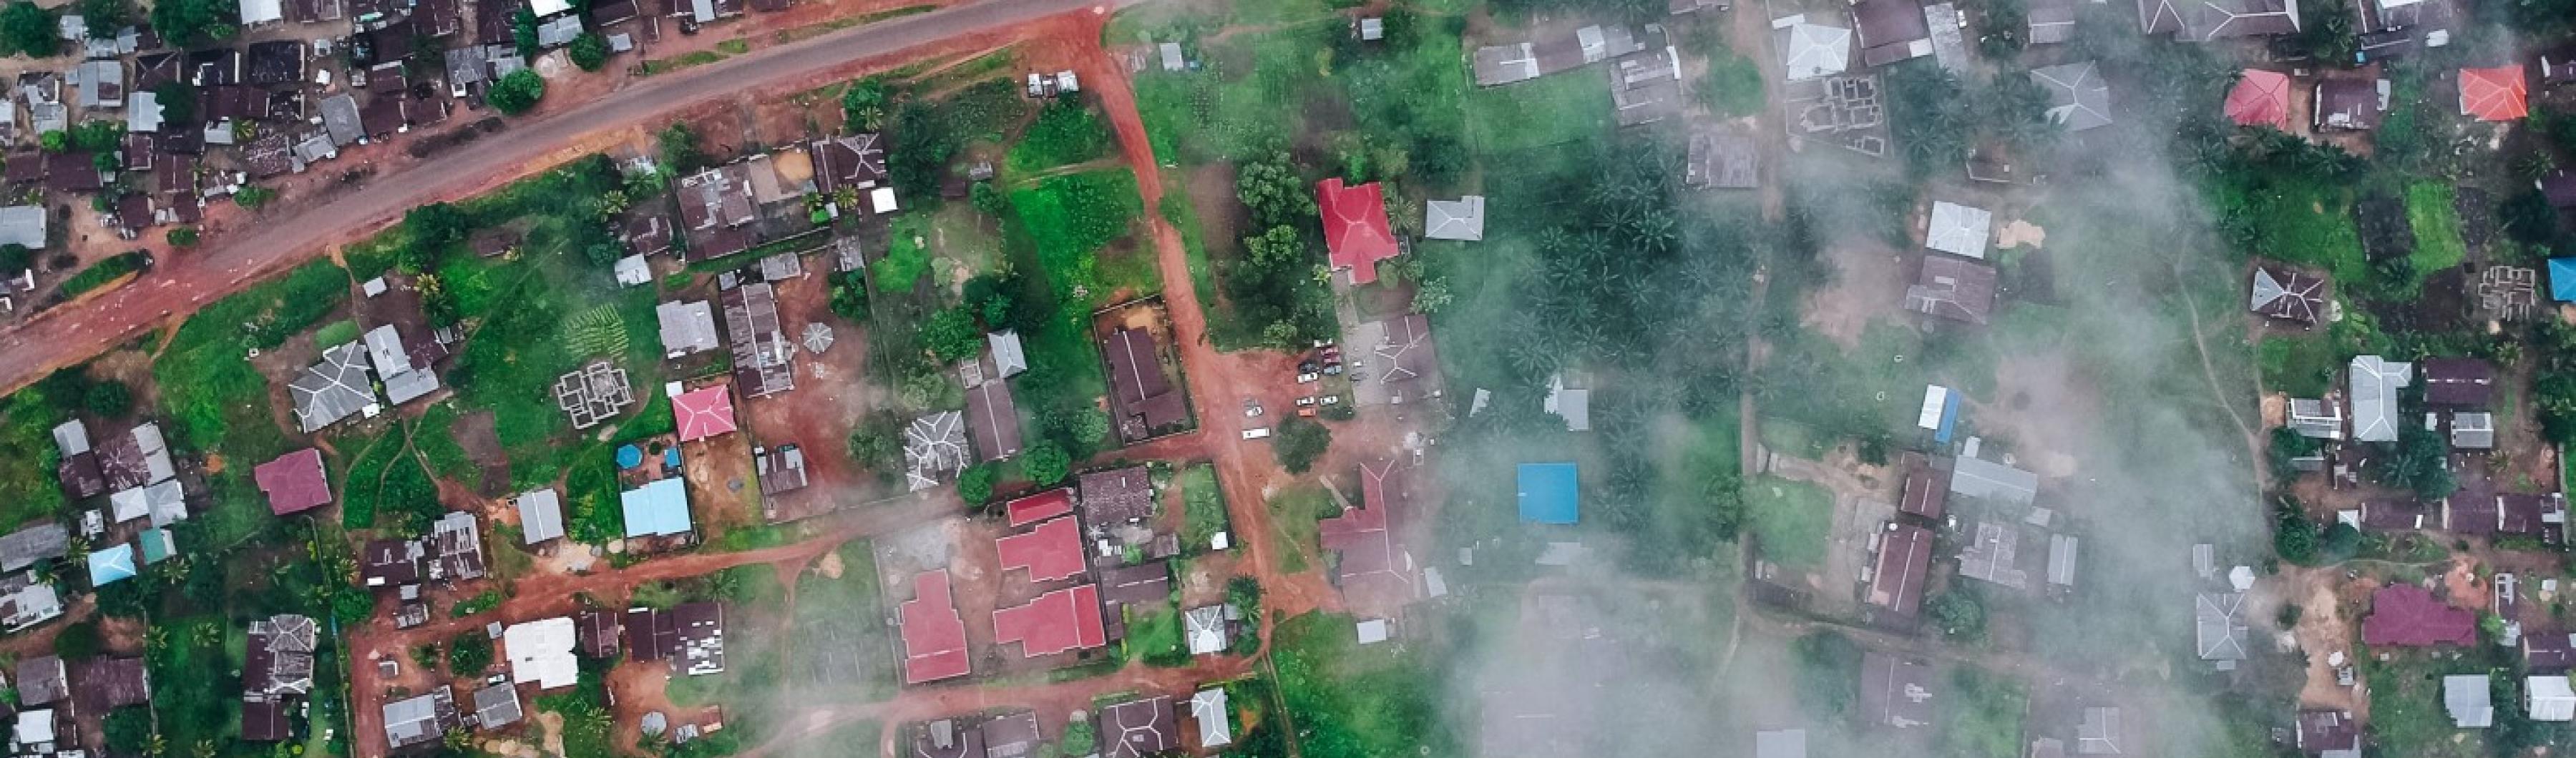 Aerial view of Freetown, Sierra Leone